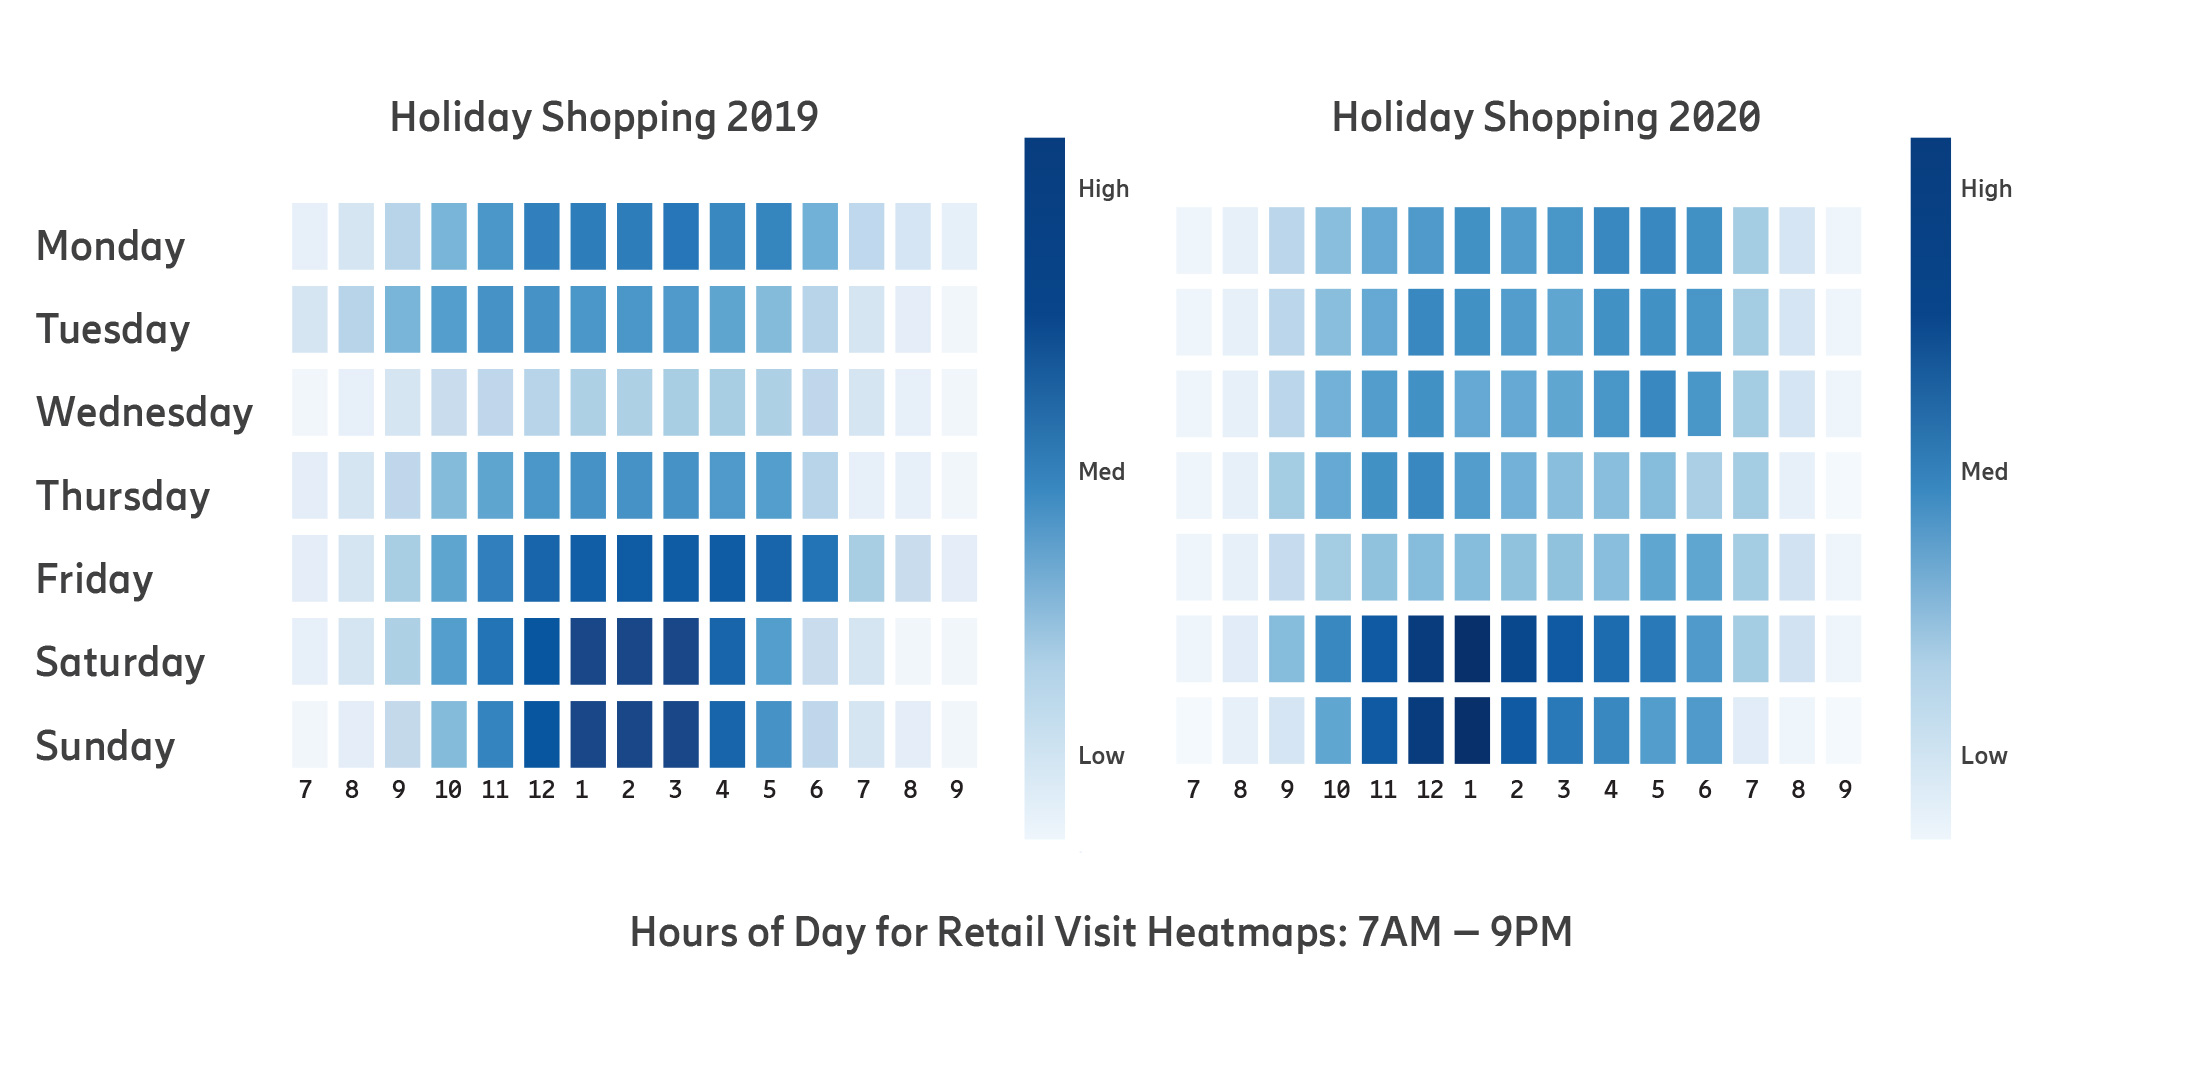 Retail visit heat map